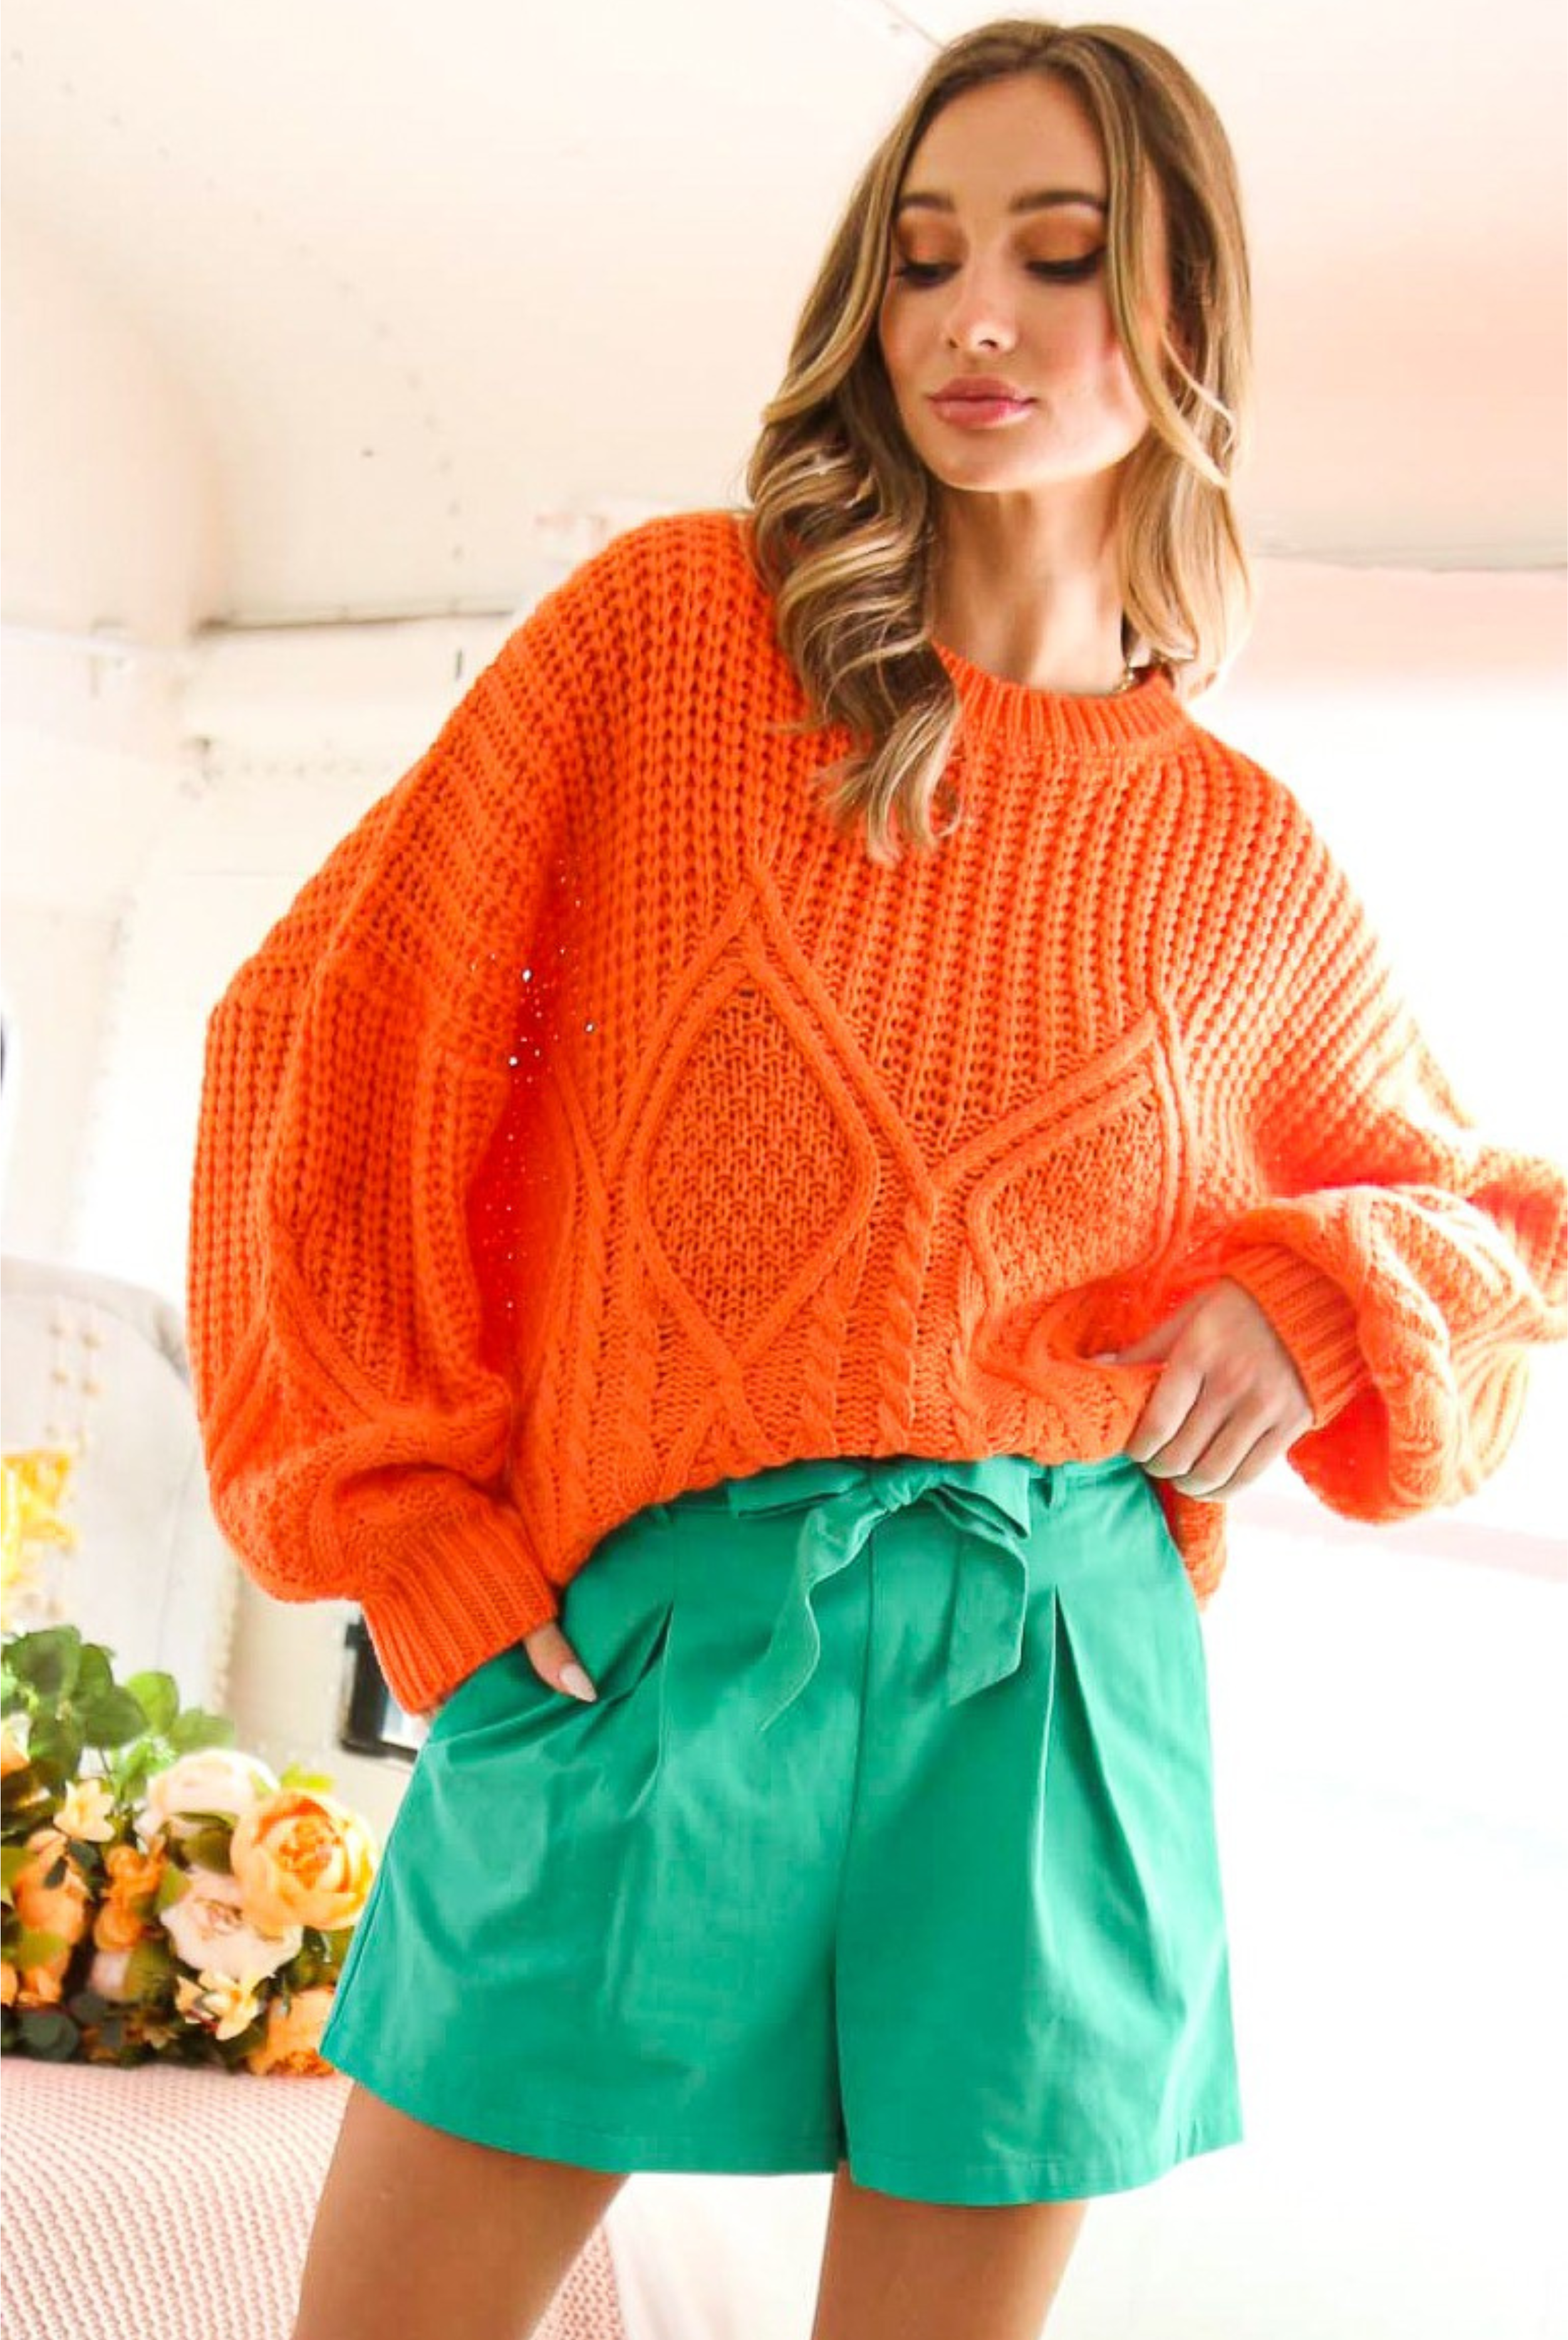 Team Pride Cable Knit Sweater-Sweater-Vine and Love-Go Big U, Women's Fashion Boutique Located in Dallas, TX